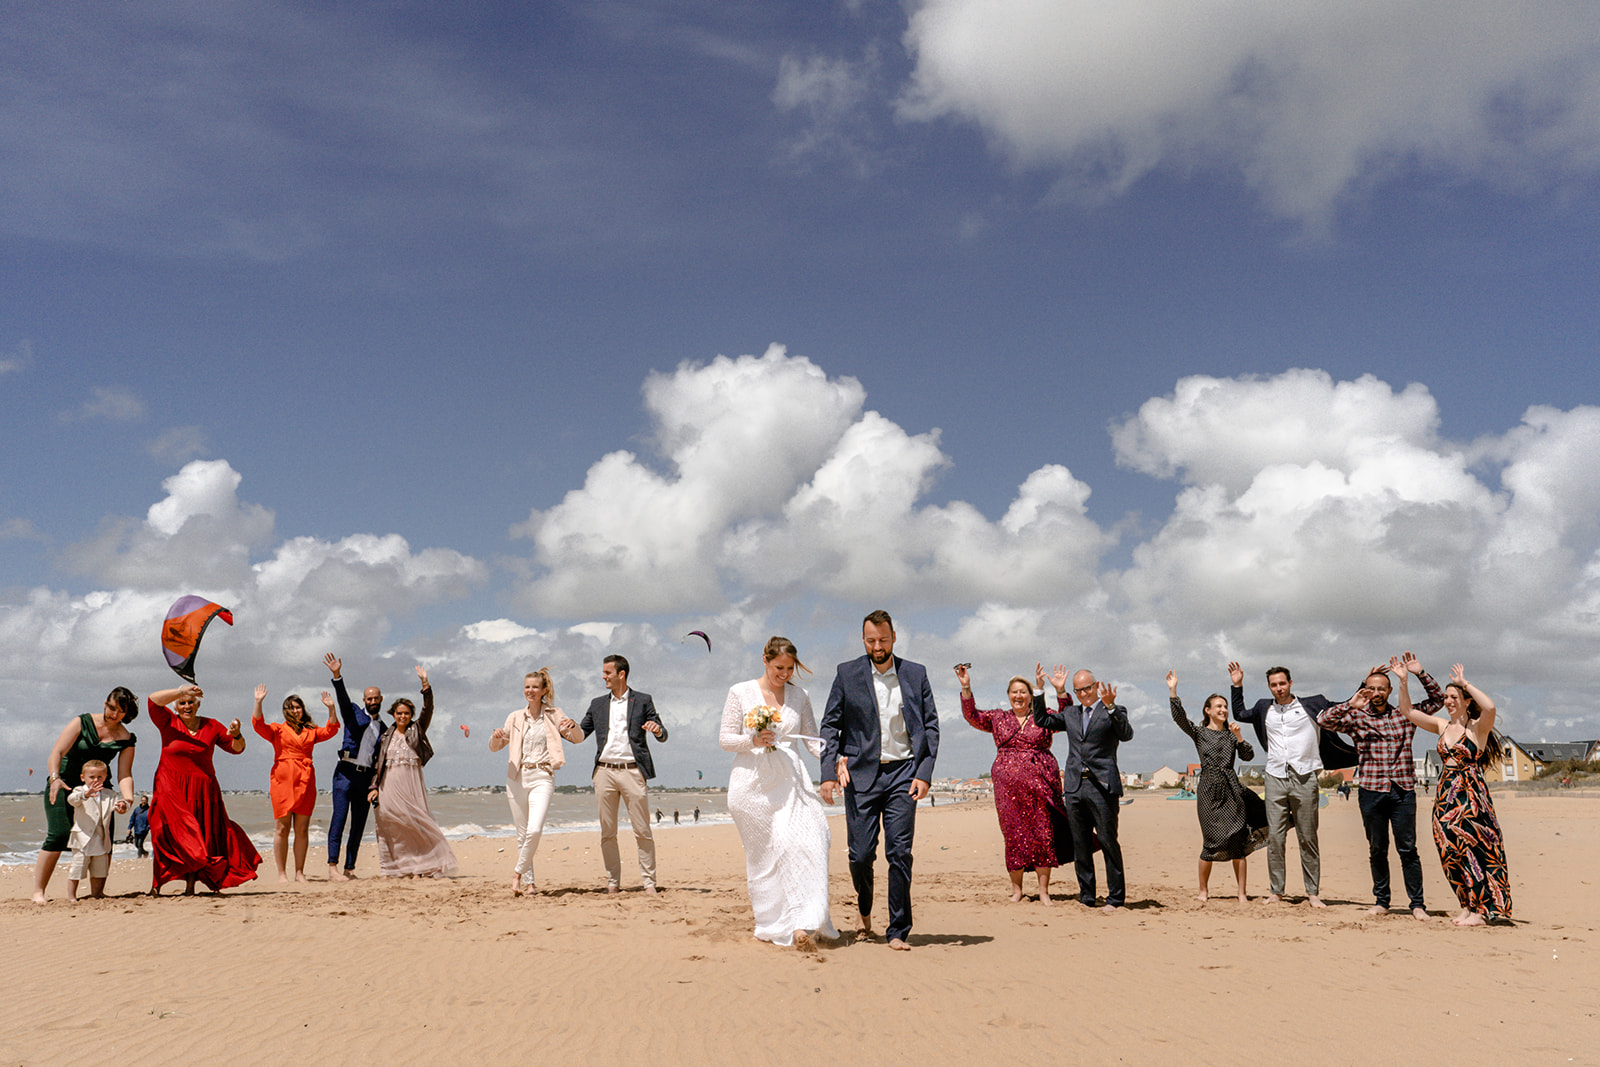 séance photo en famille, mariage au soleil, photographe chatelaillon-plage.